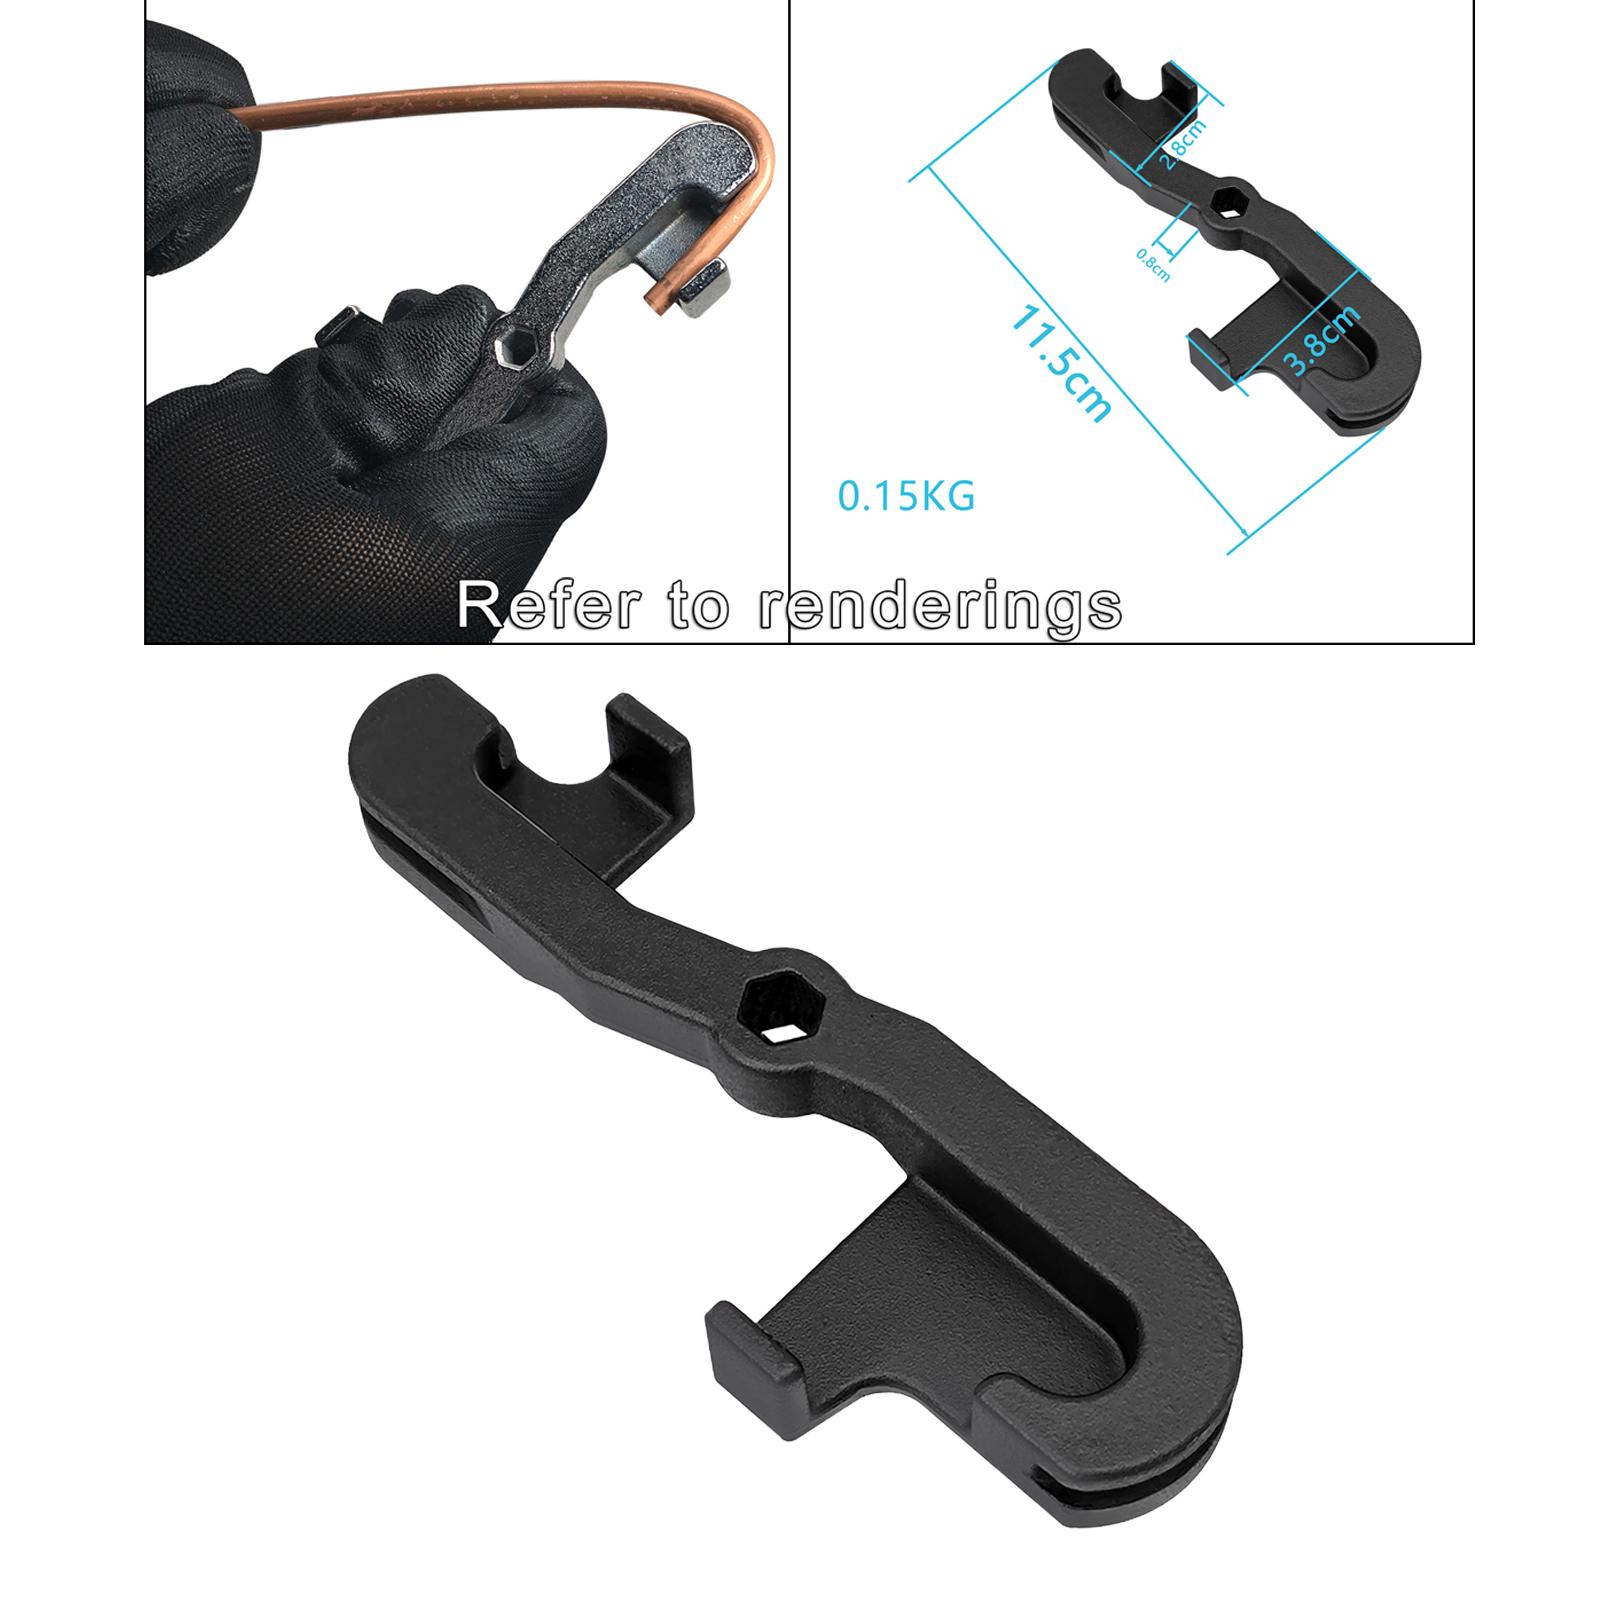 Handy 5mm Brake Pipe Bender Bending Tool Automotive Hand Held Tool